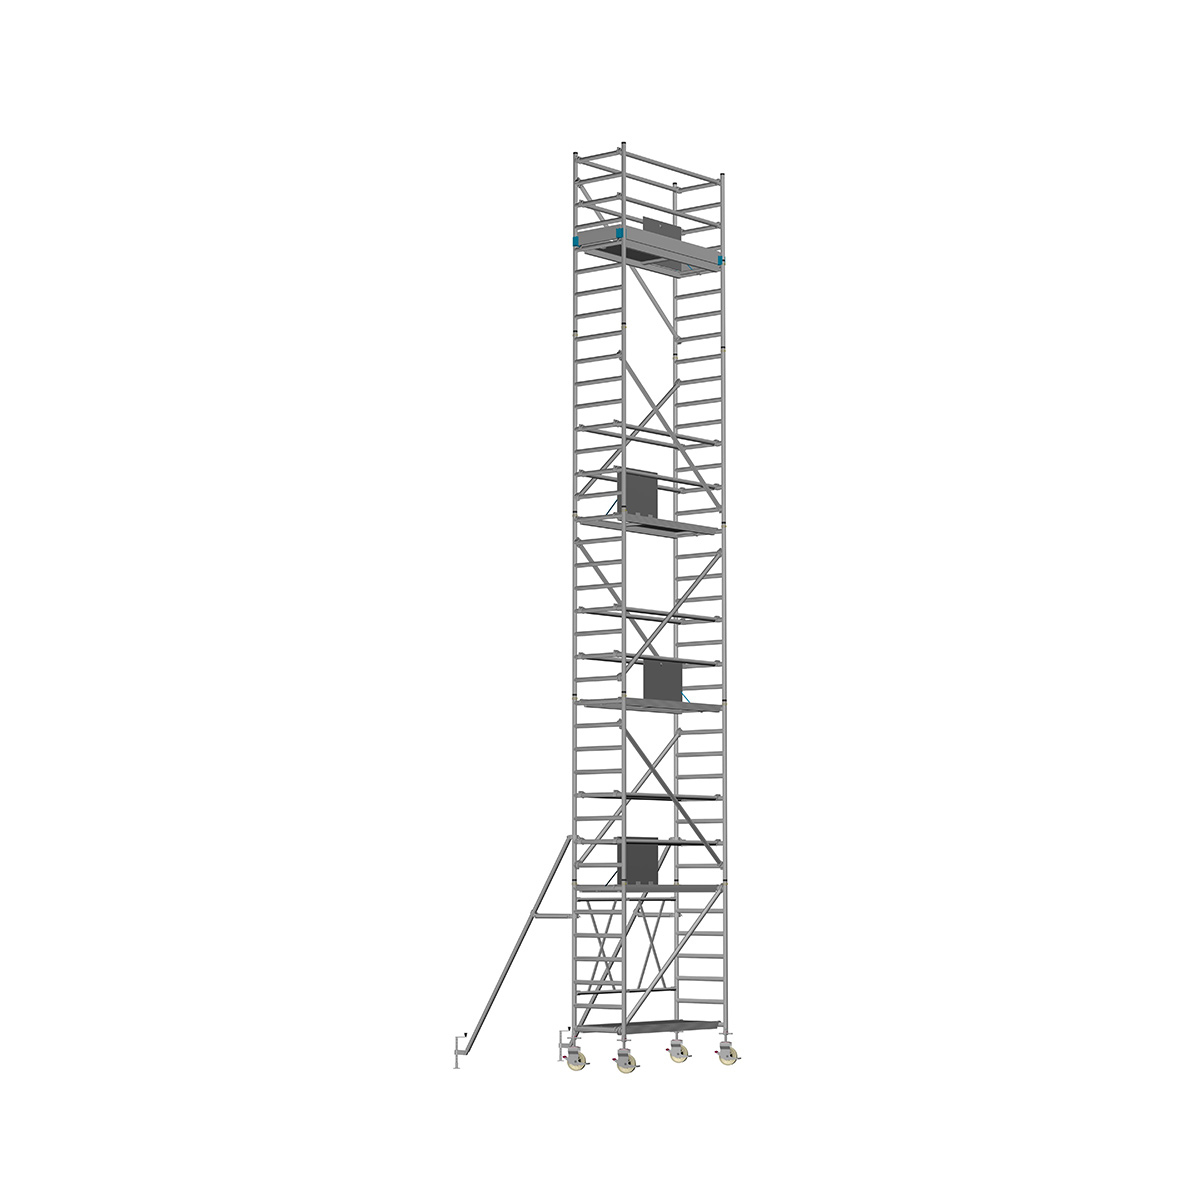 Chiemsee 2 SPEZIAL - Länge: 2,54 m - Breite: 0,74 m, Standhöhe 1,00 m